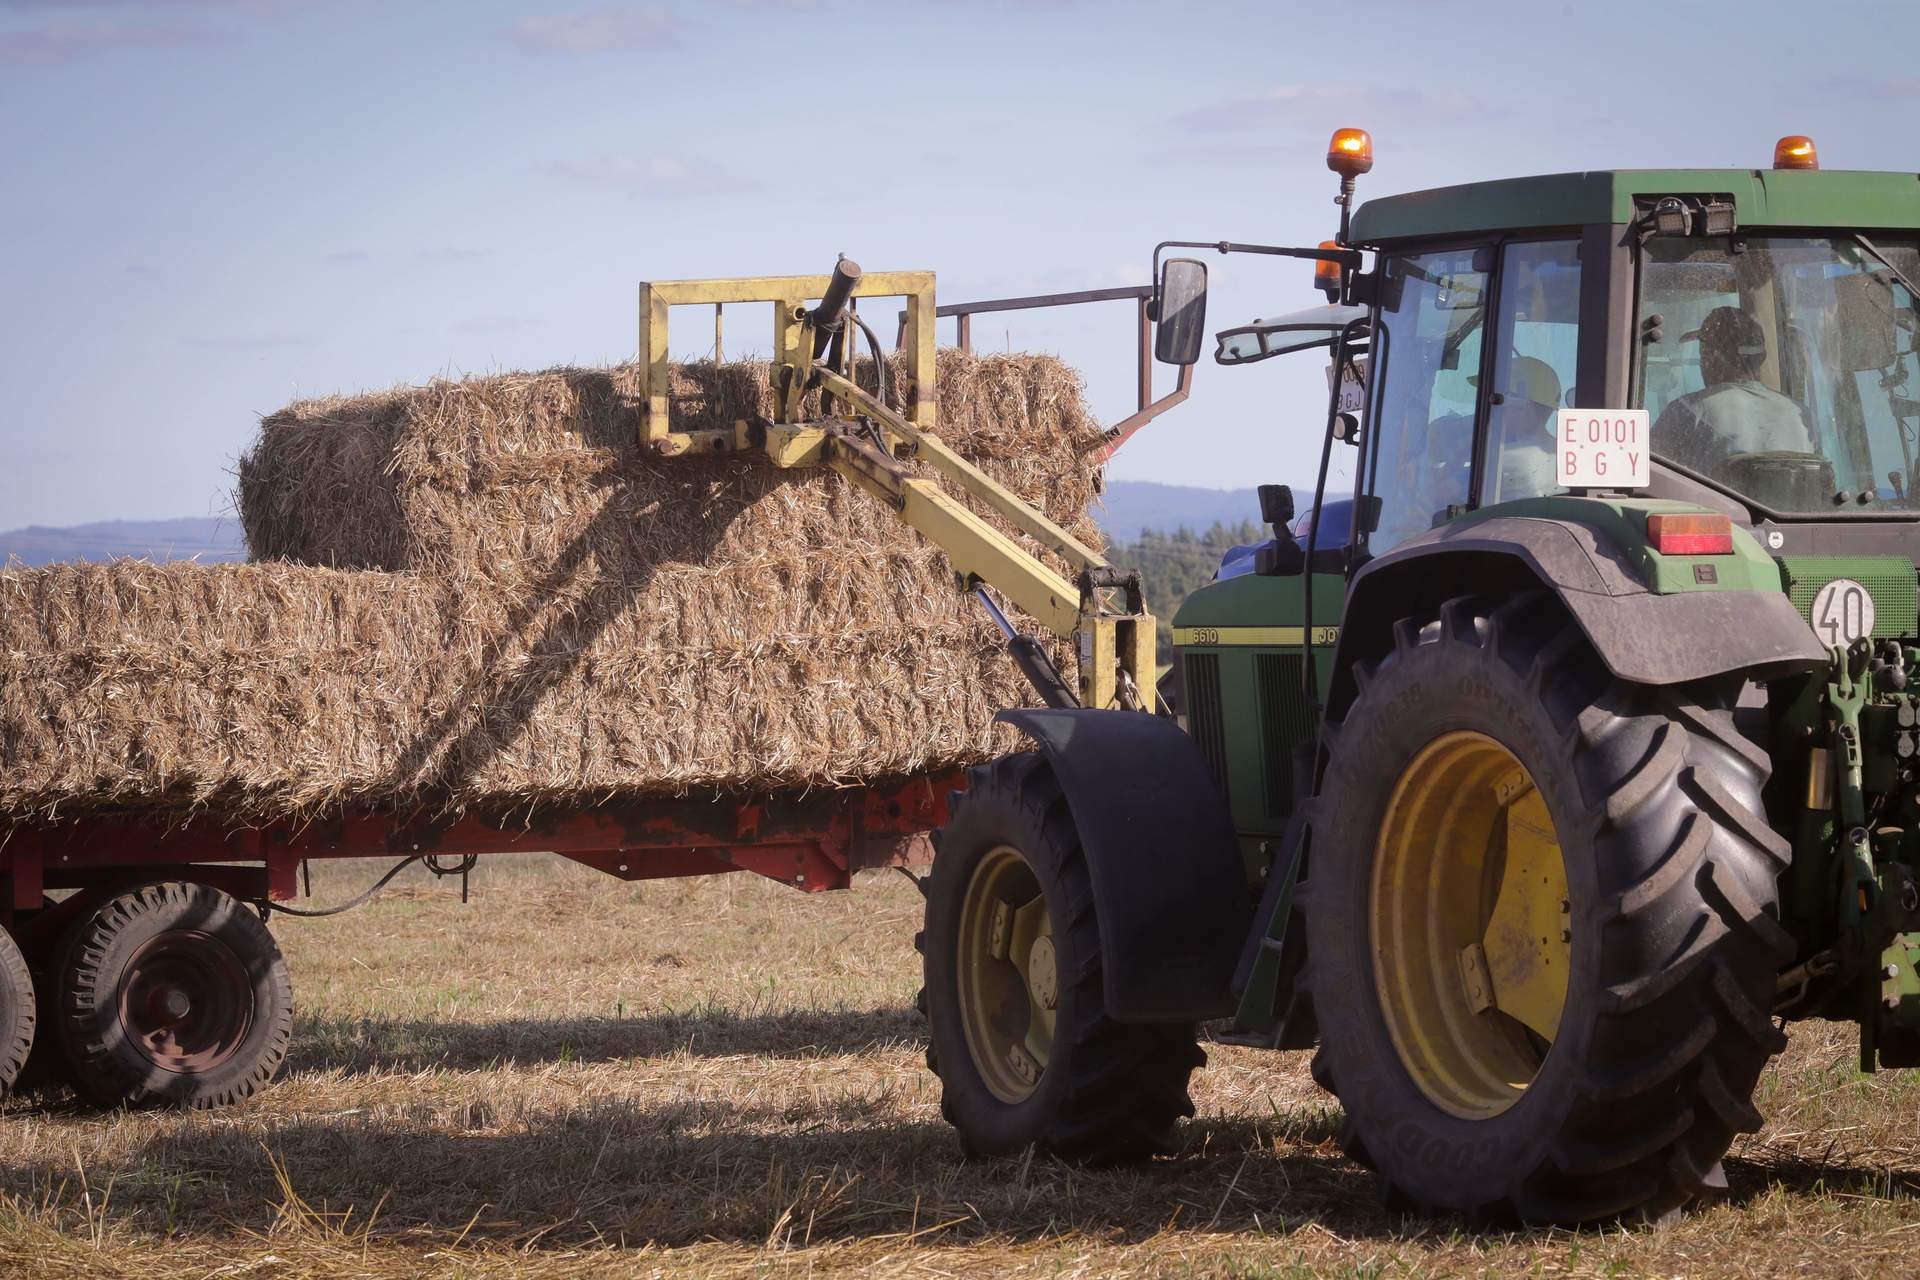 Bruselas invita a los agricultores a compartir experiencias sobre prácticas comerciales desleales